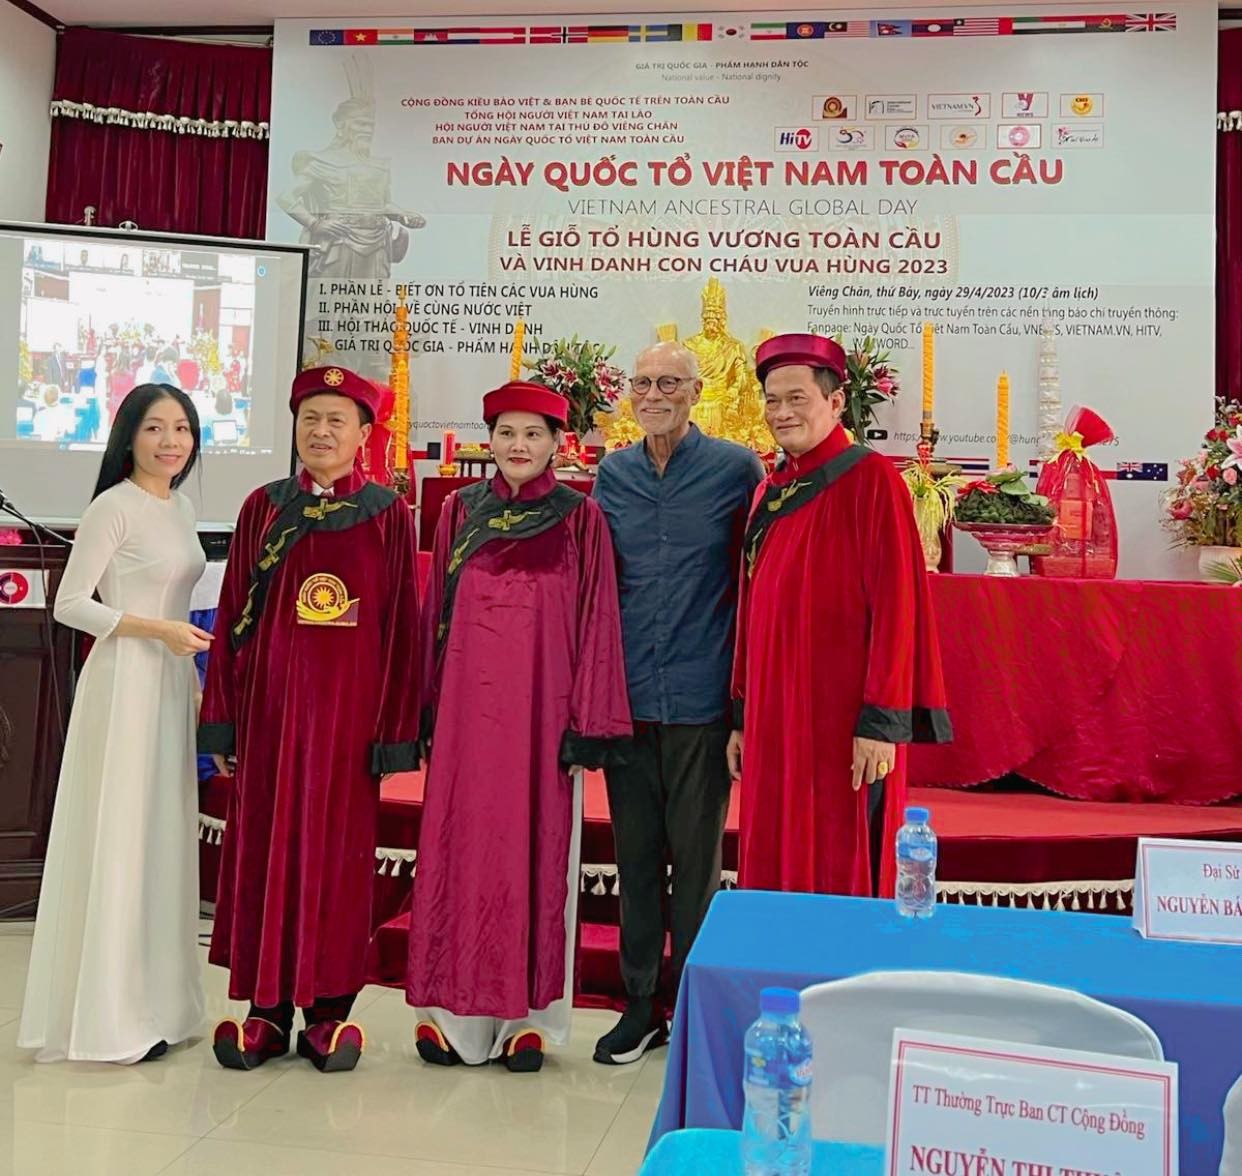 Tiến sĩ Nguyễn Thị Bích Yến - người lan toả văn hoá Việt trên thế giới